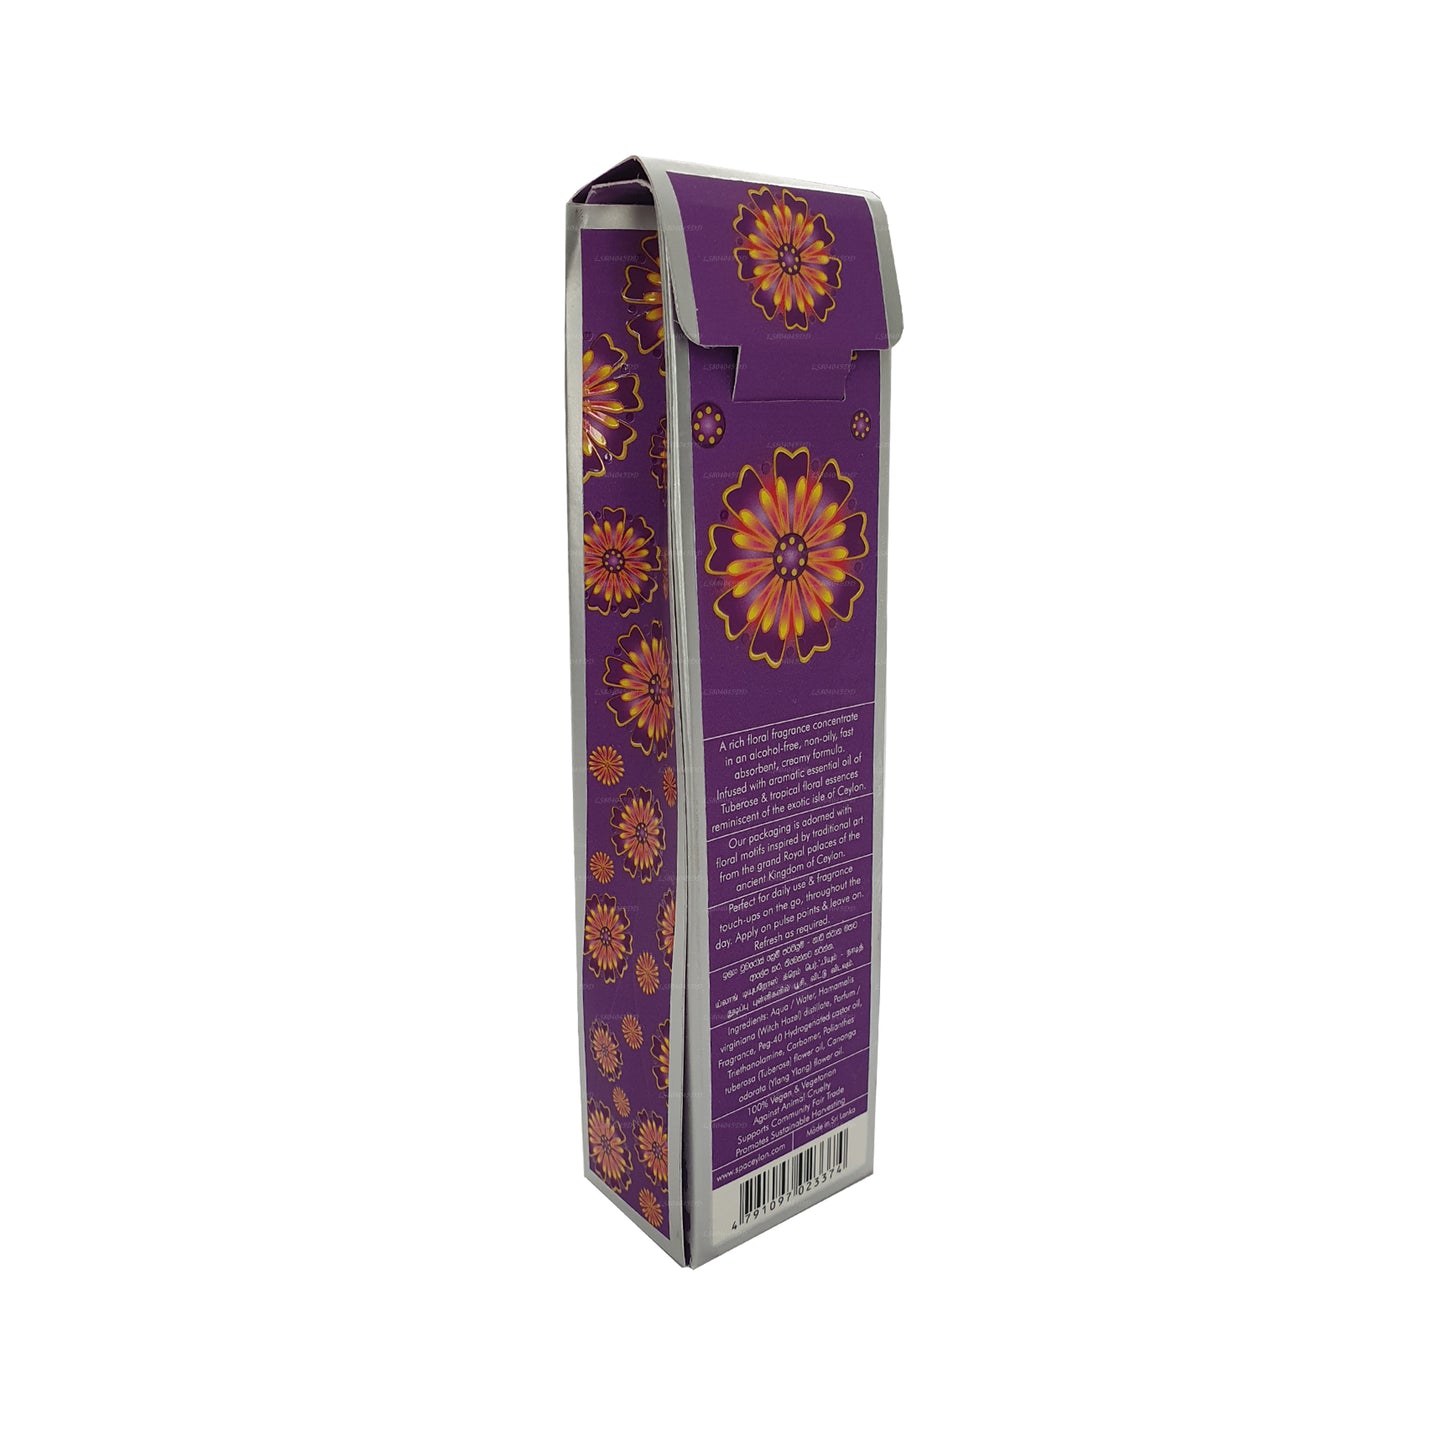 Spa Ceylon Ylang Tuberose Creme Parfum (15 g)